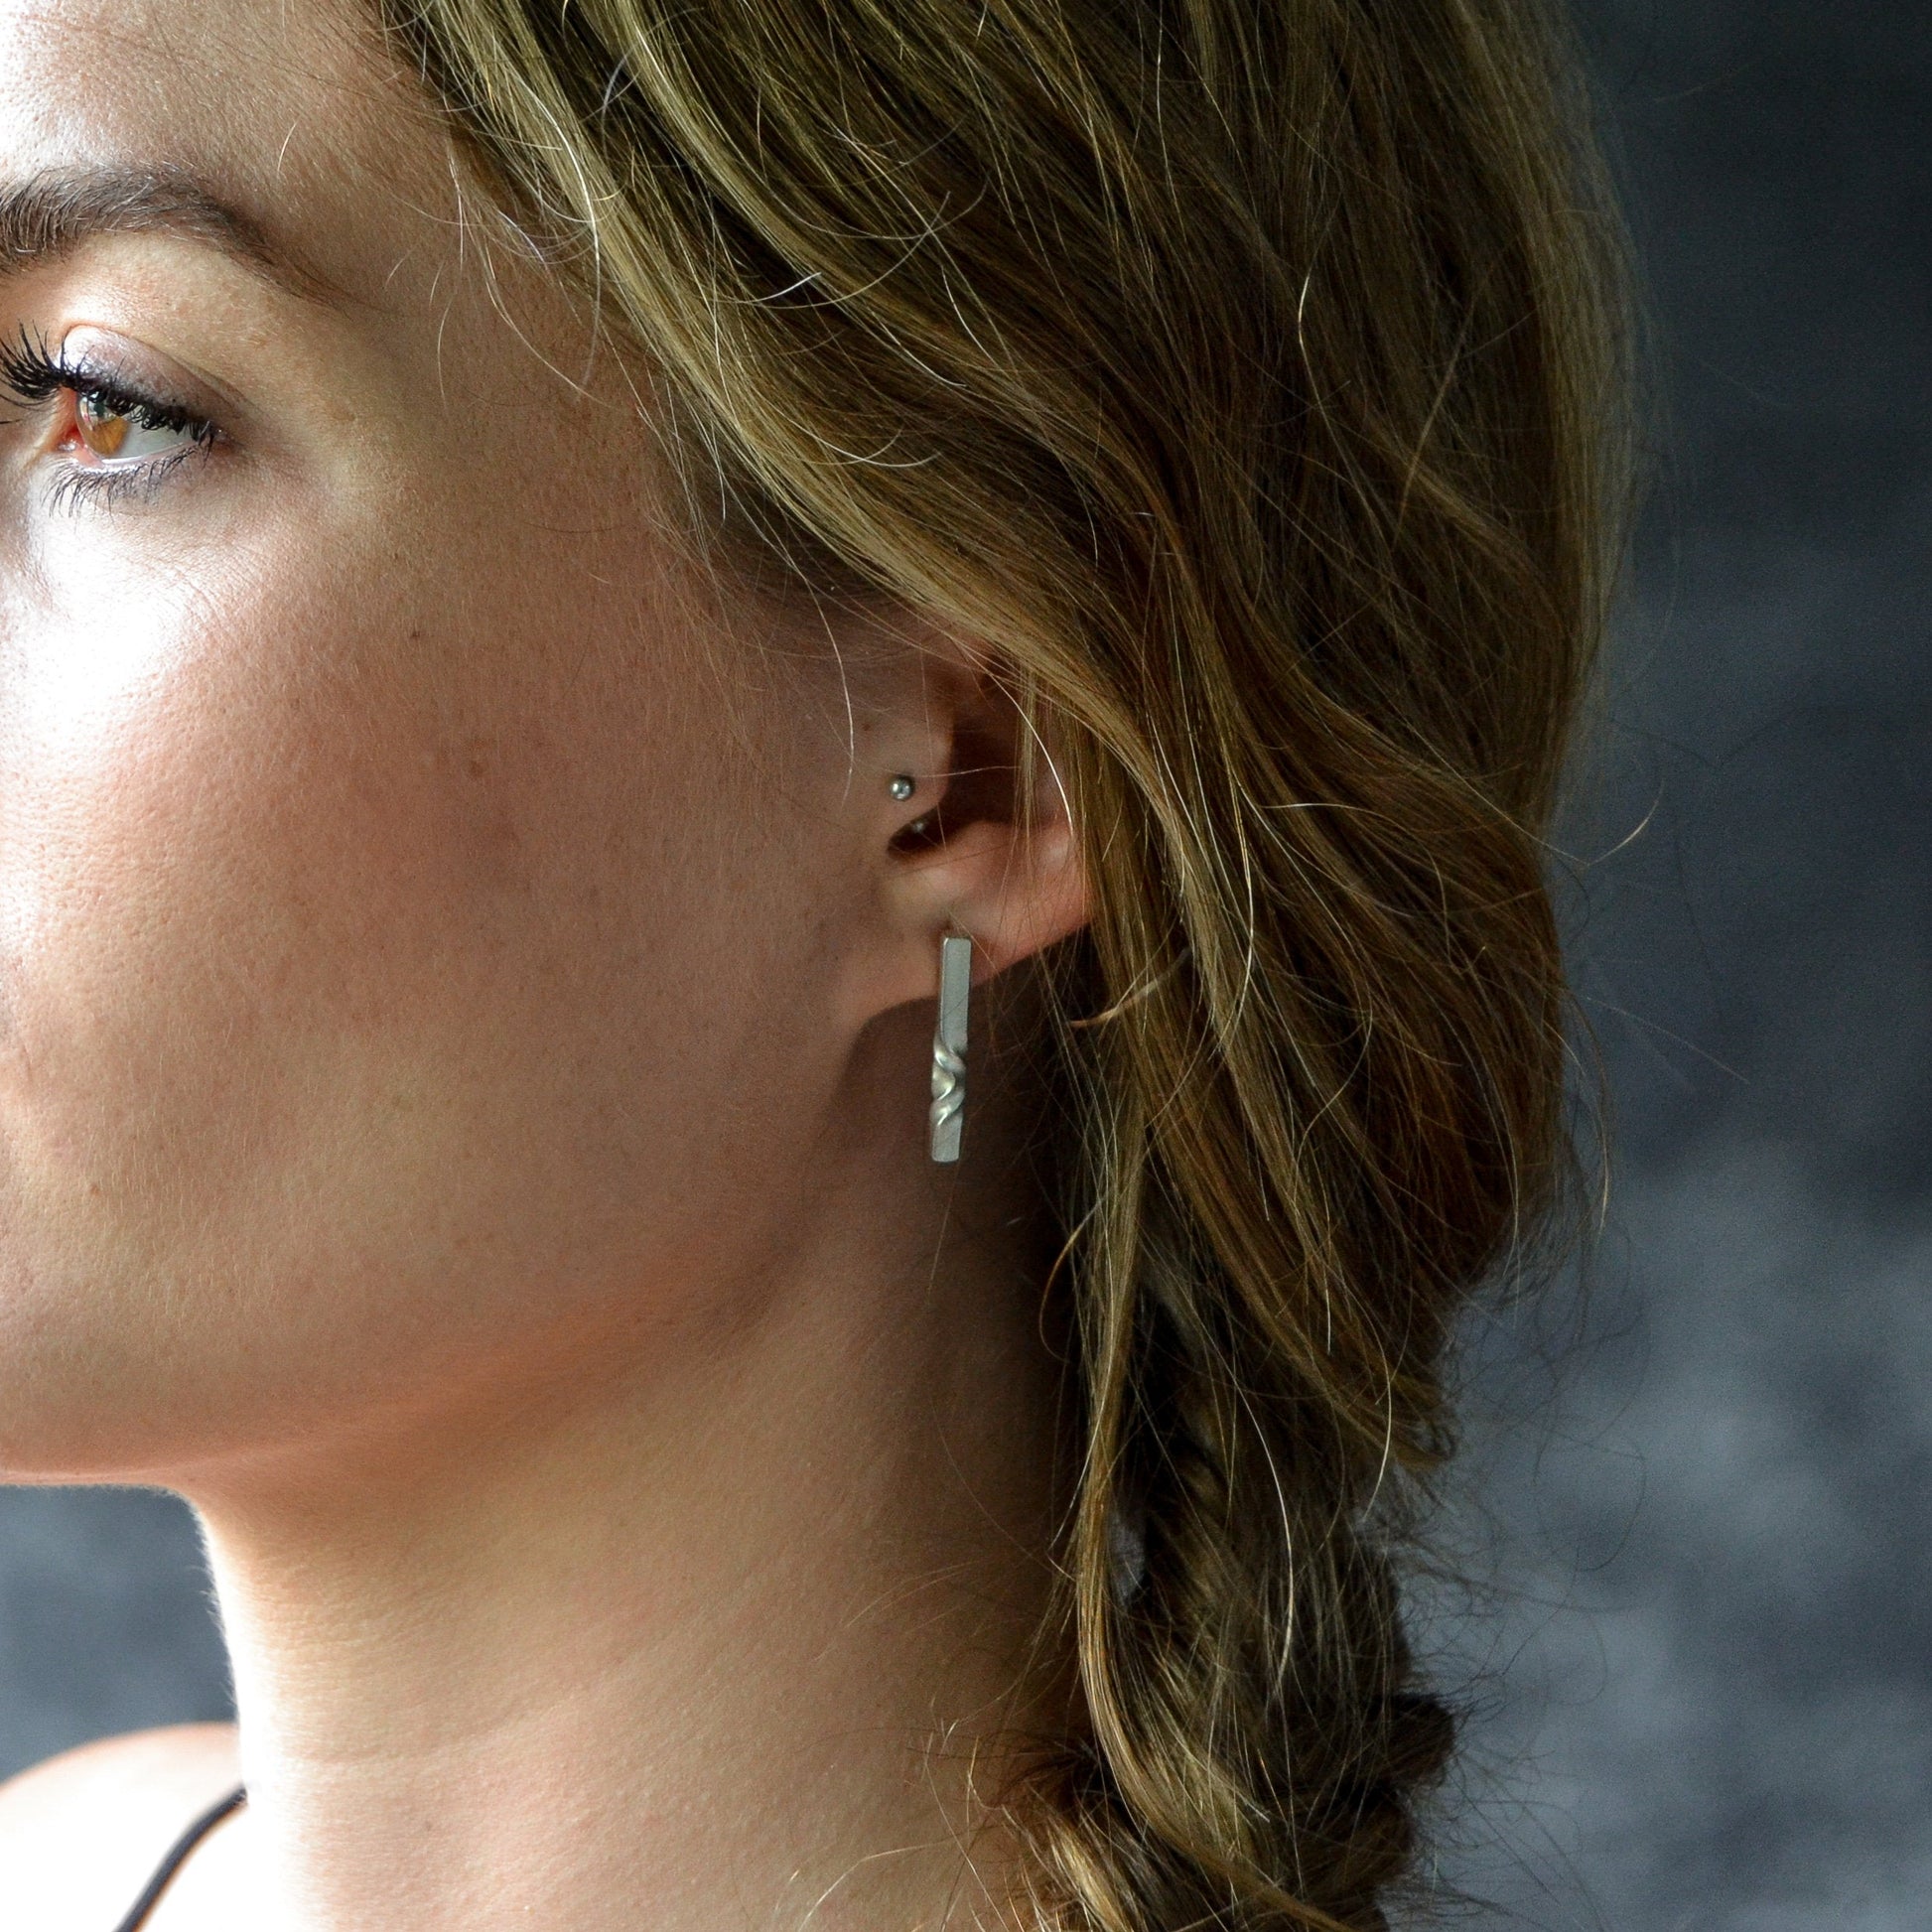 minimal sterling studs - geometric silver earrings - earrings for wife - architectural jewelry -modern earrings - everyday earrings